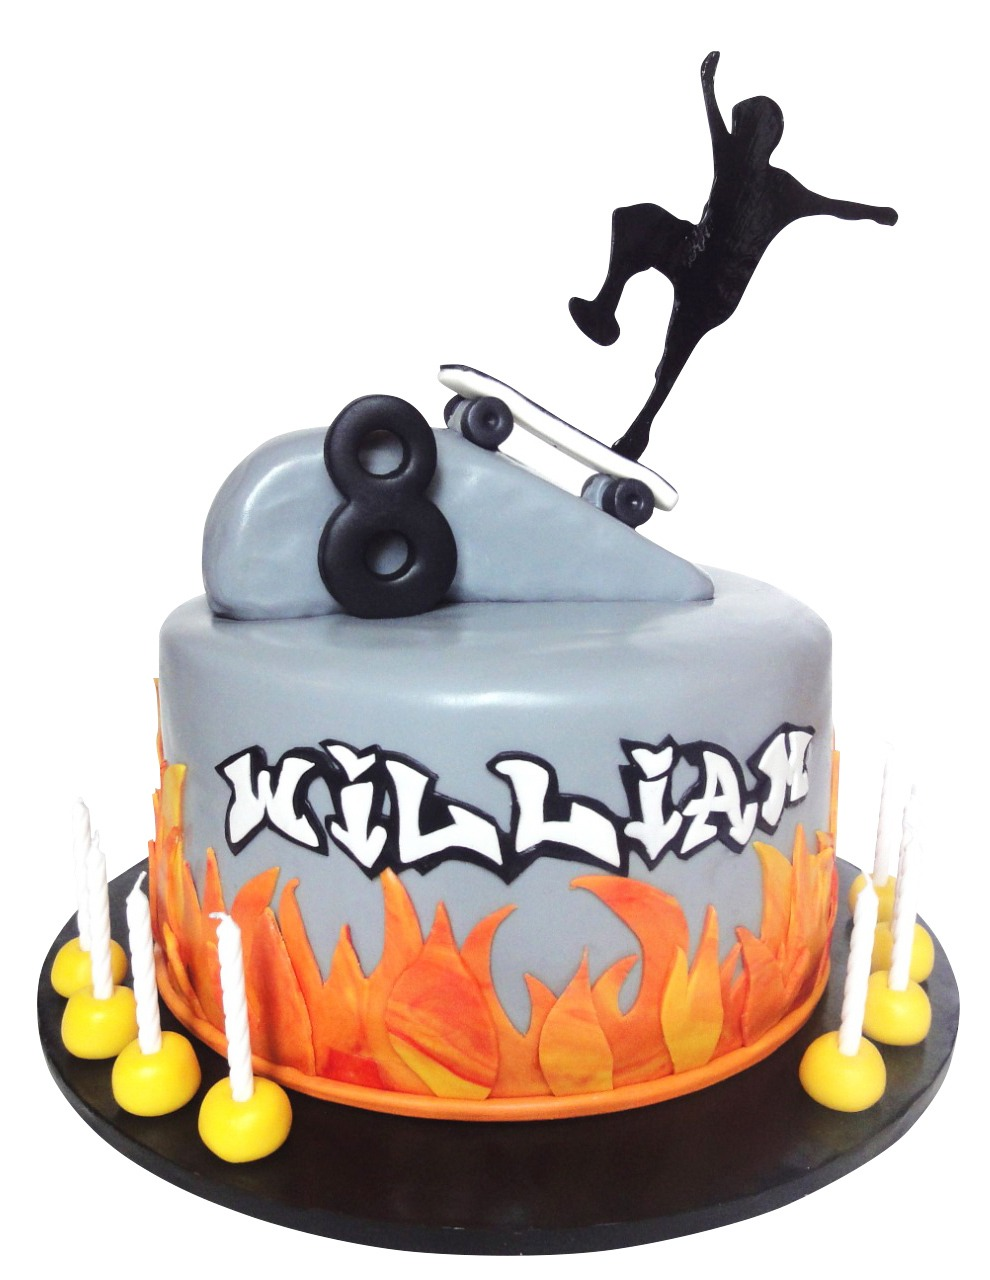 Skate Board Theme Cake 